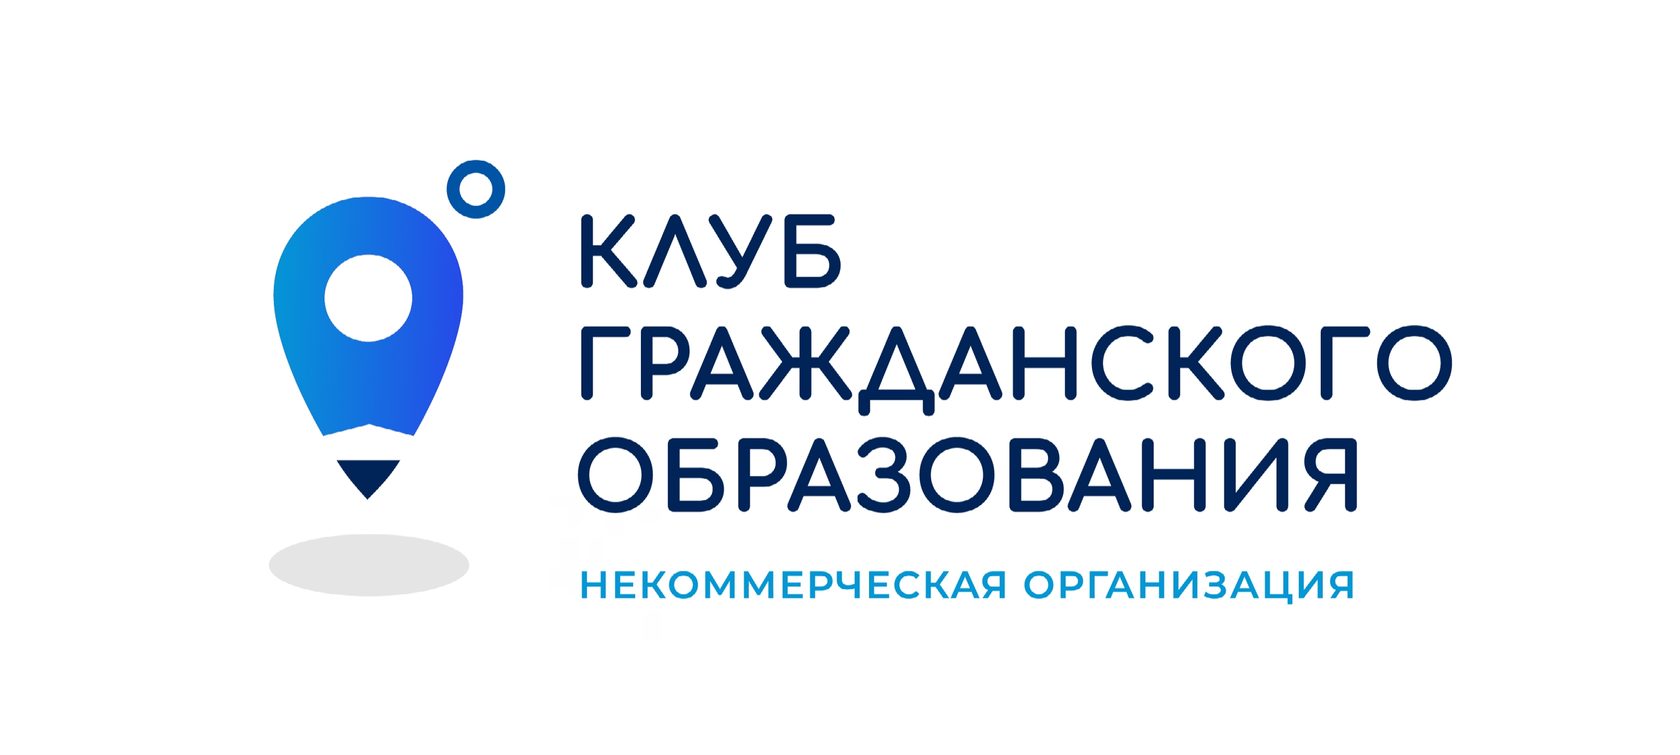 Autonomiczna organizacja non-profit "Ulyanovsk klub edukacji obywatelskiej"